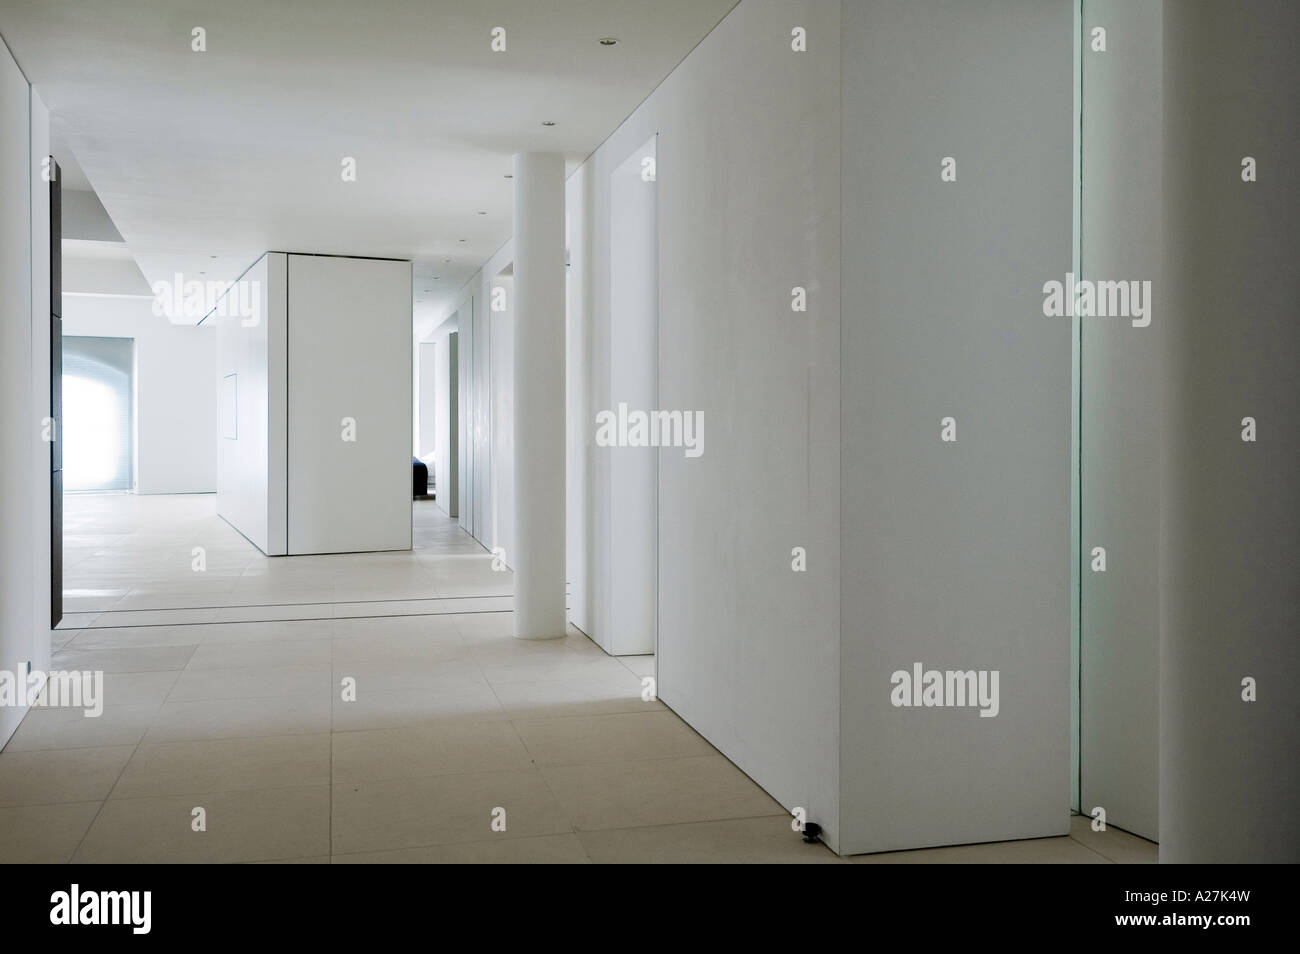 Corridoio in stile minimalista di conversione di magazzino Foto Stock